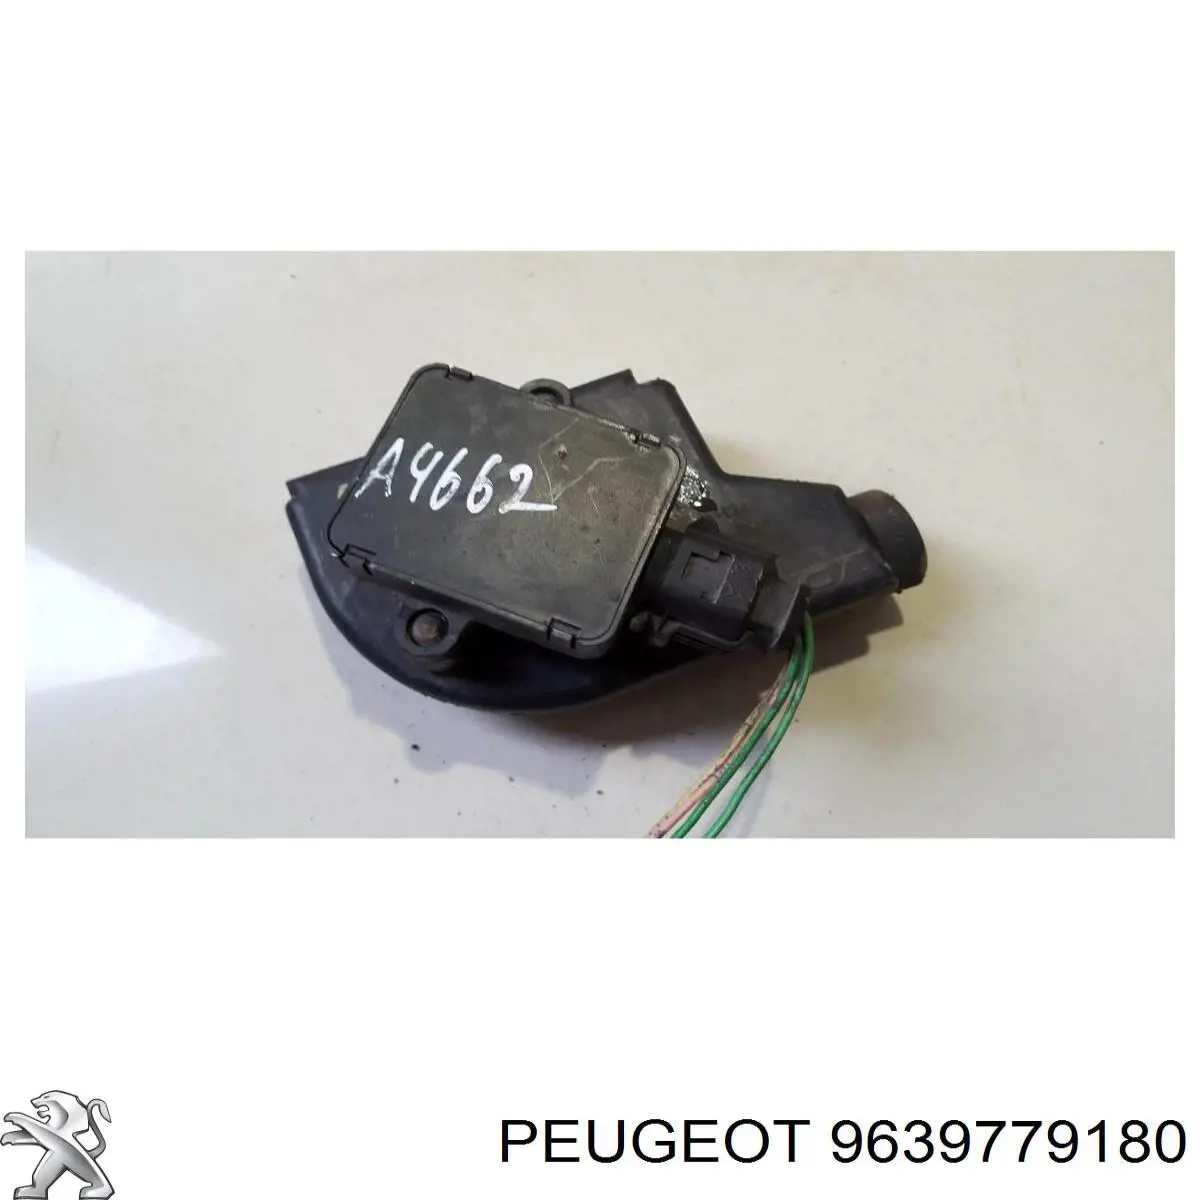 9639779180 Peugeot/Citroen sensor de posição de pedal de acelerador (de gás)